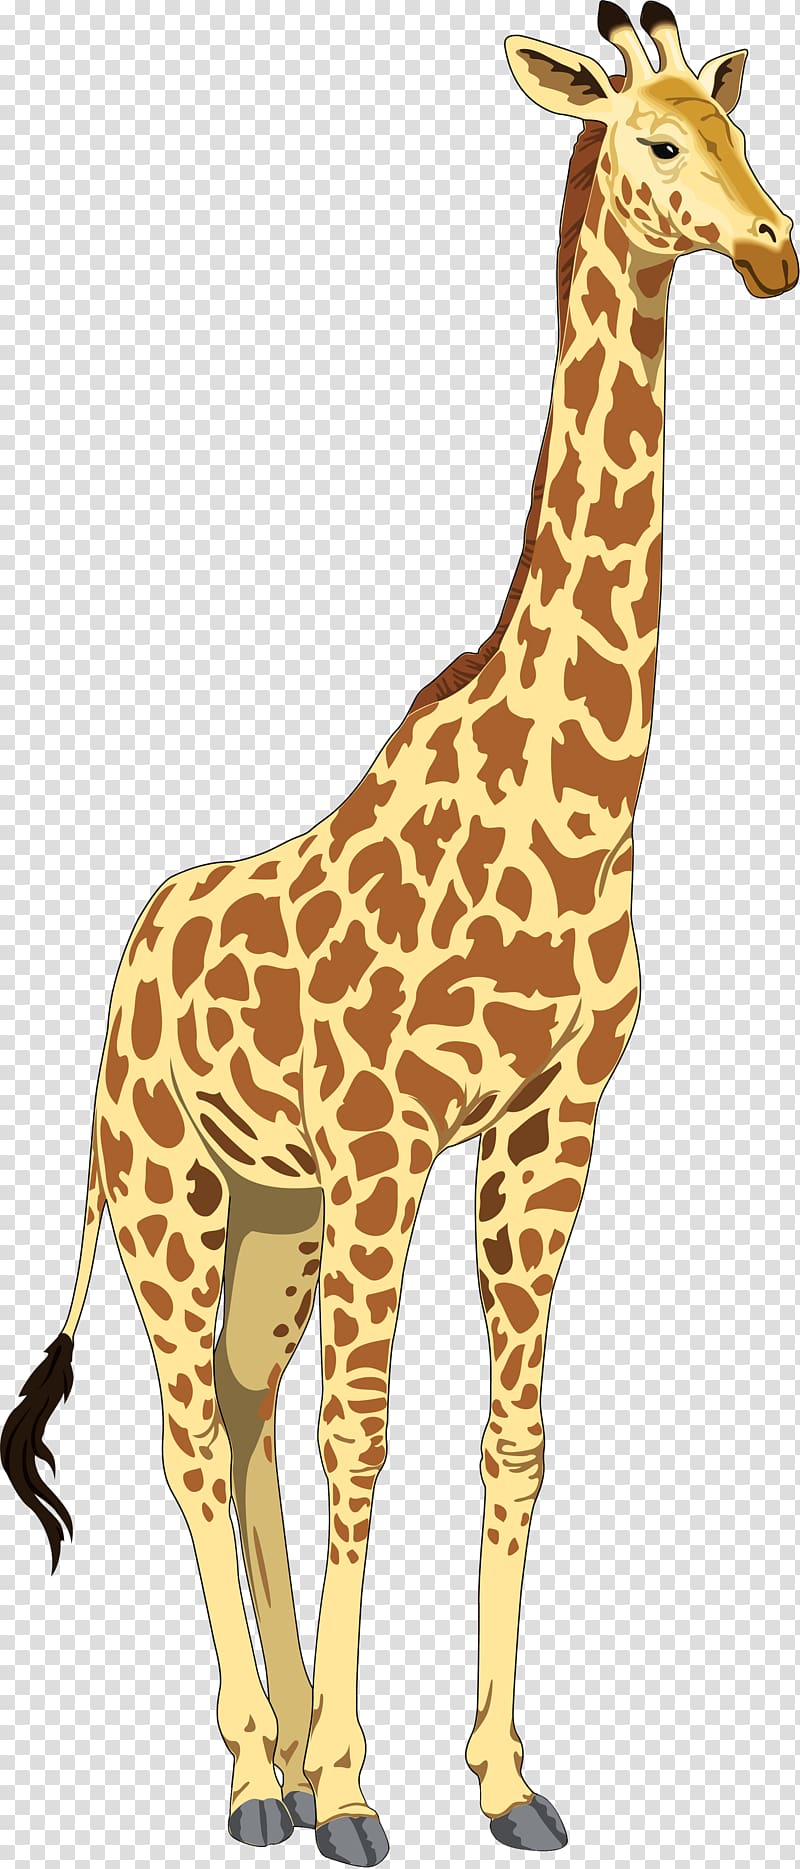 Baby Giraffes , giraffe cartoon transparent background PNG clipart